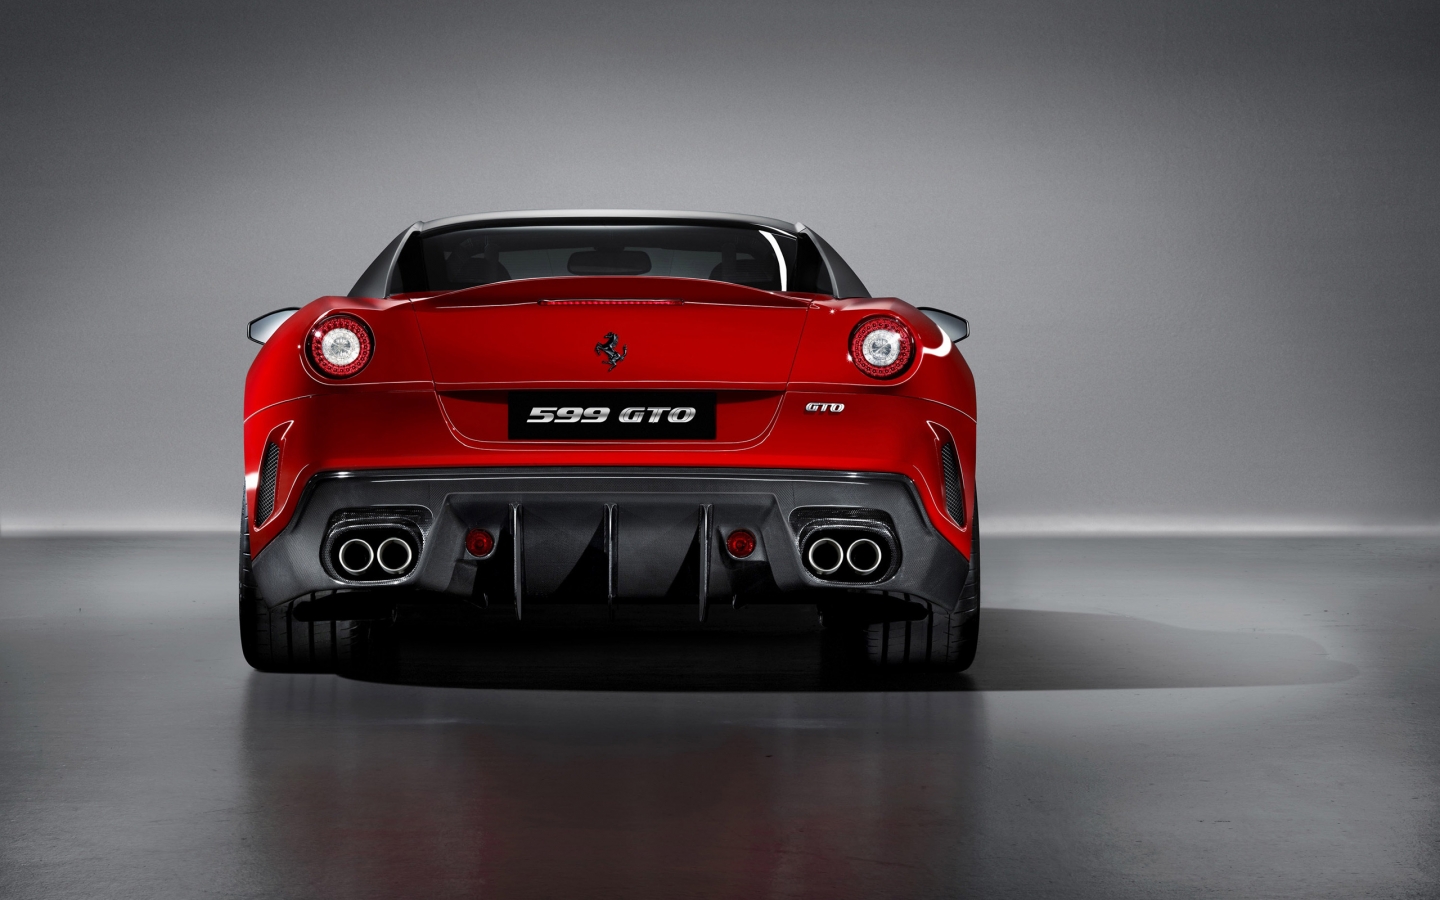 Ferrari 599 GTO Rear for 1440 x 900 widescreen resolution